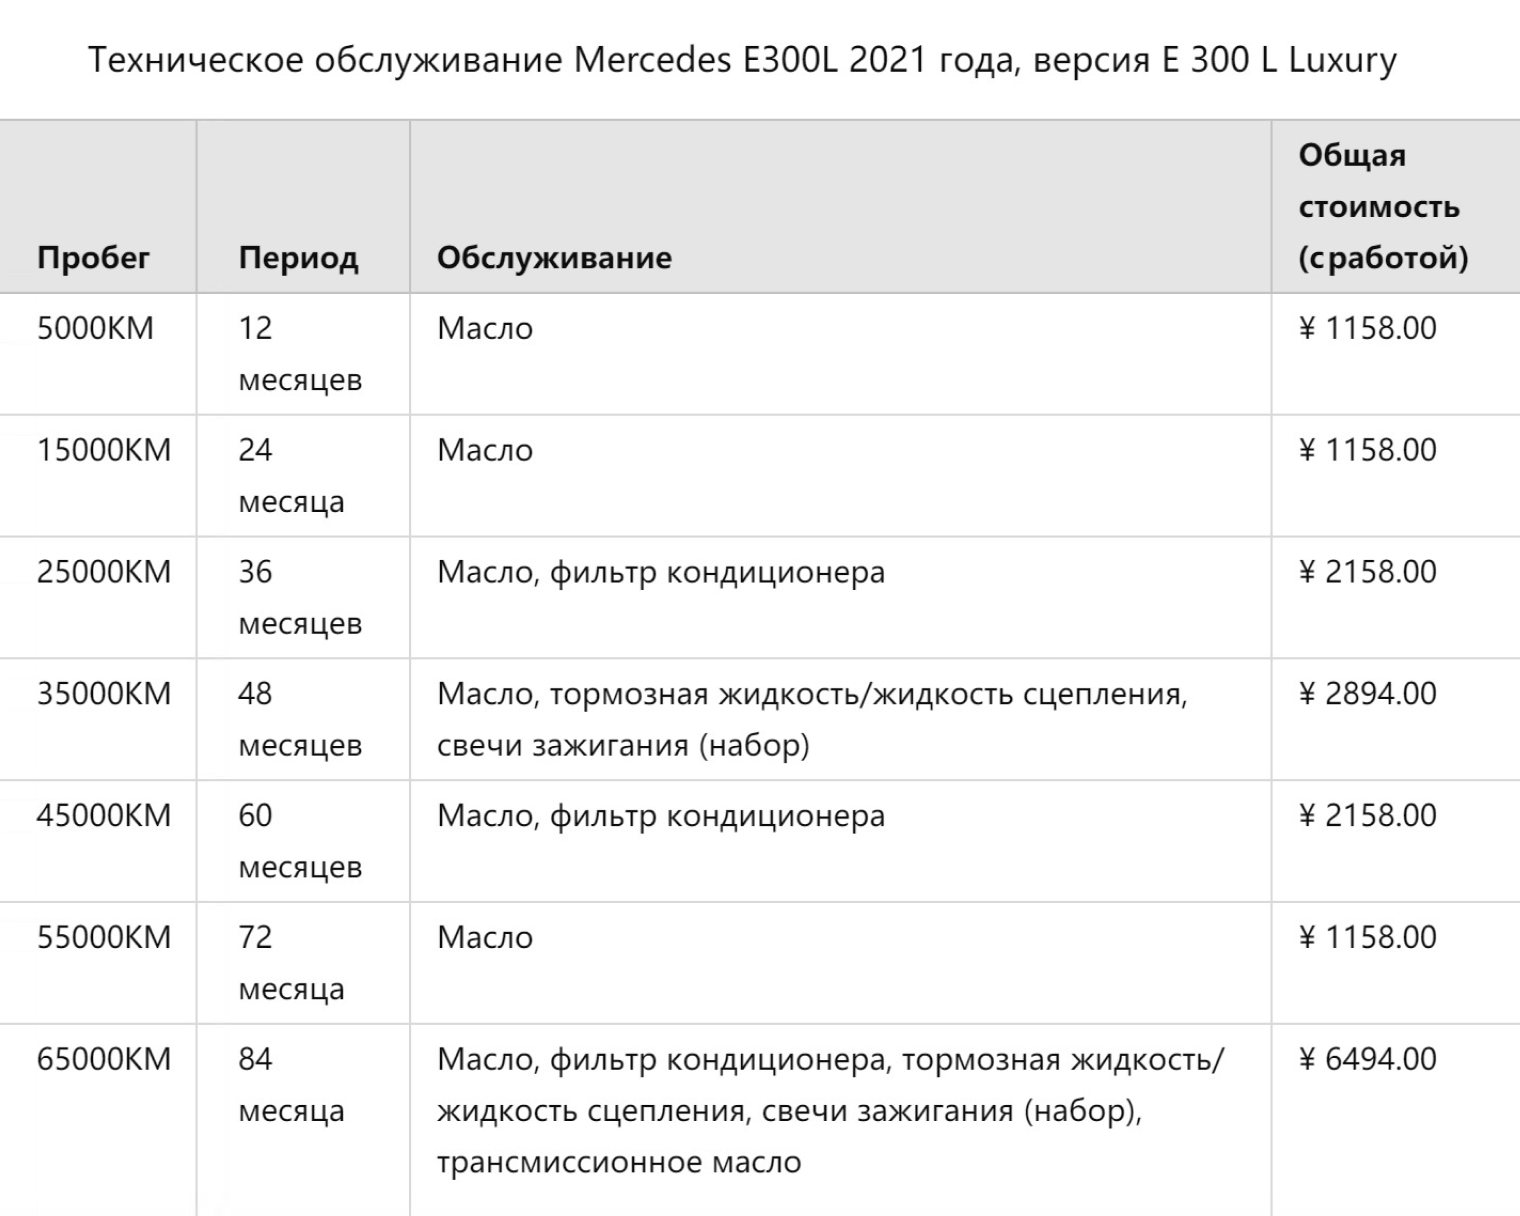 Примерная стоимость ТО в Китае для Mercedes⁠-⁠Benz E300L